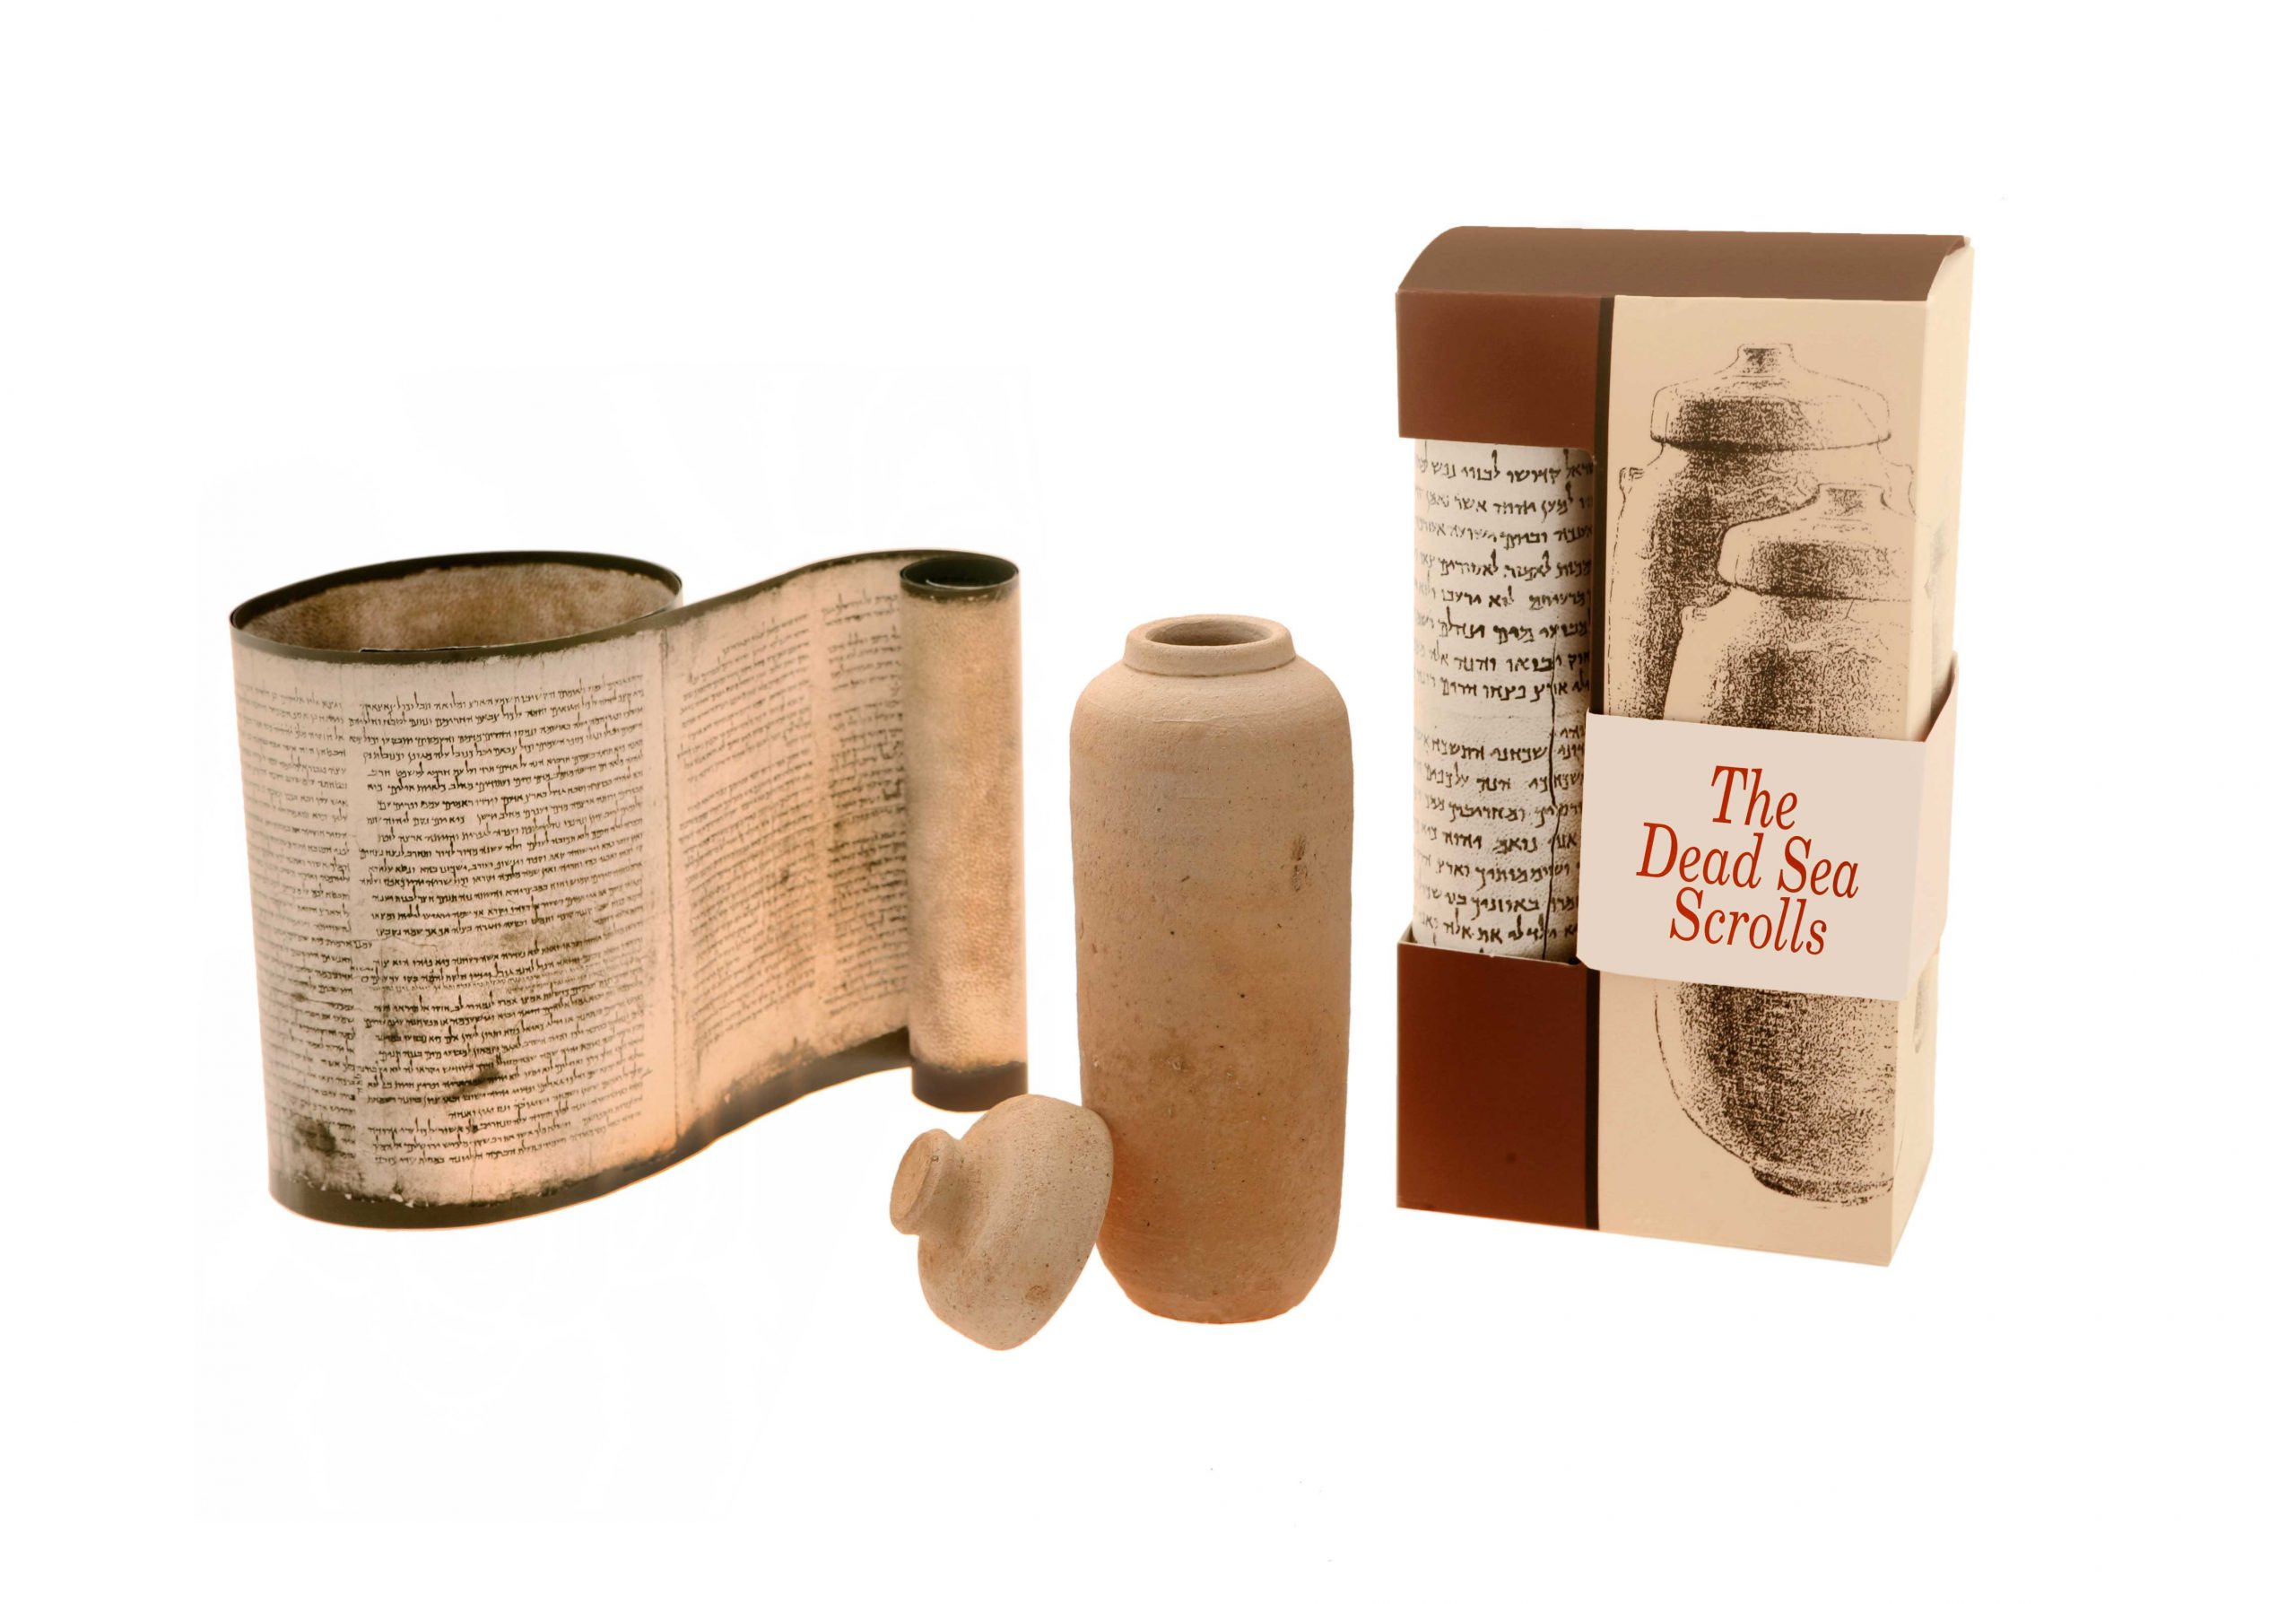 Replica of the Dead Sea Scrolls, English